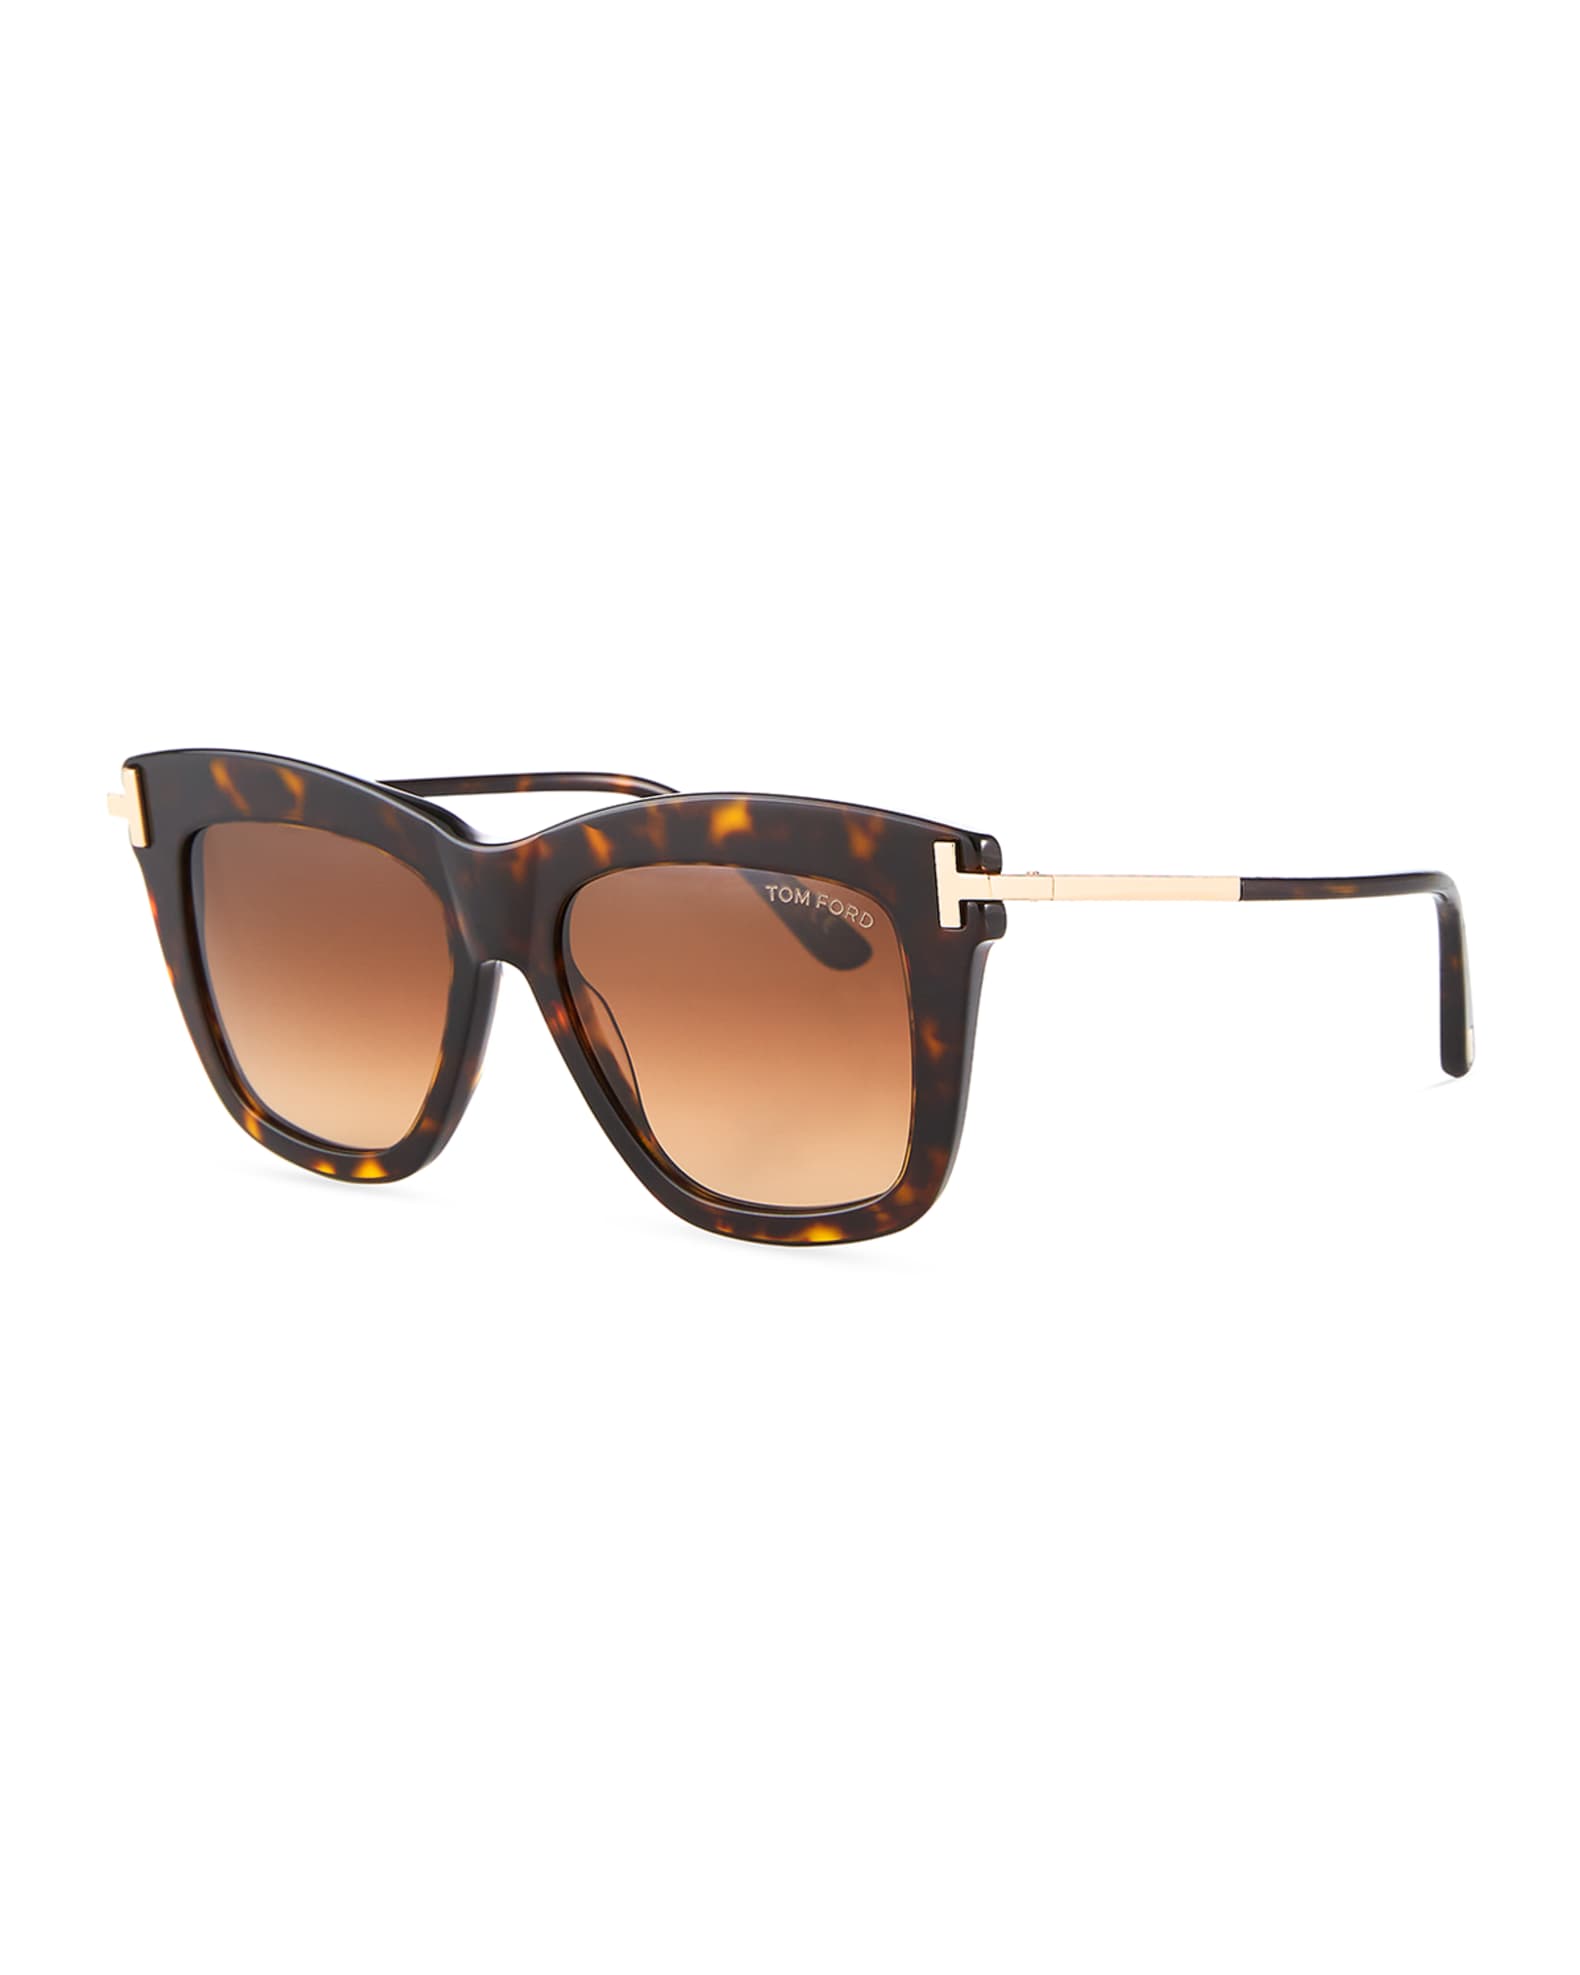 TOM FORD Dasha Oversized Square Acetate Sunglasses, Black | Neiman Marcus